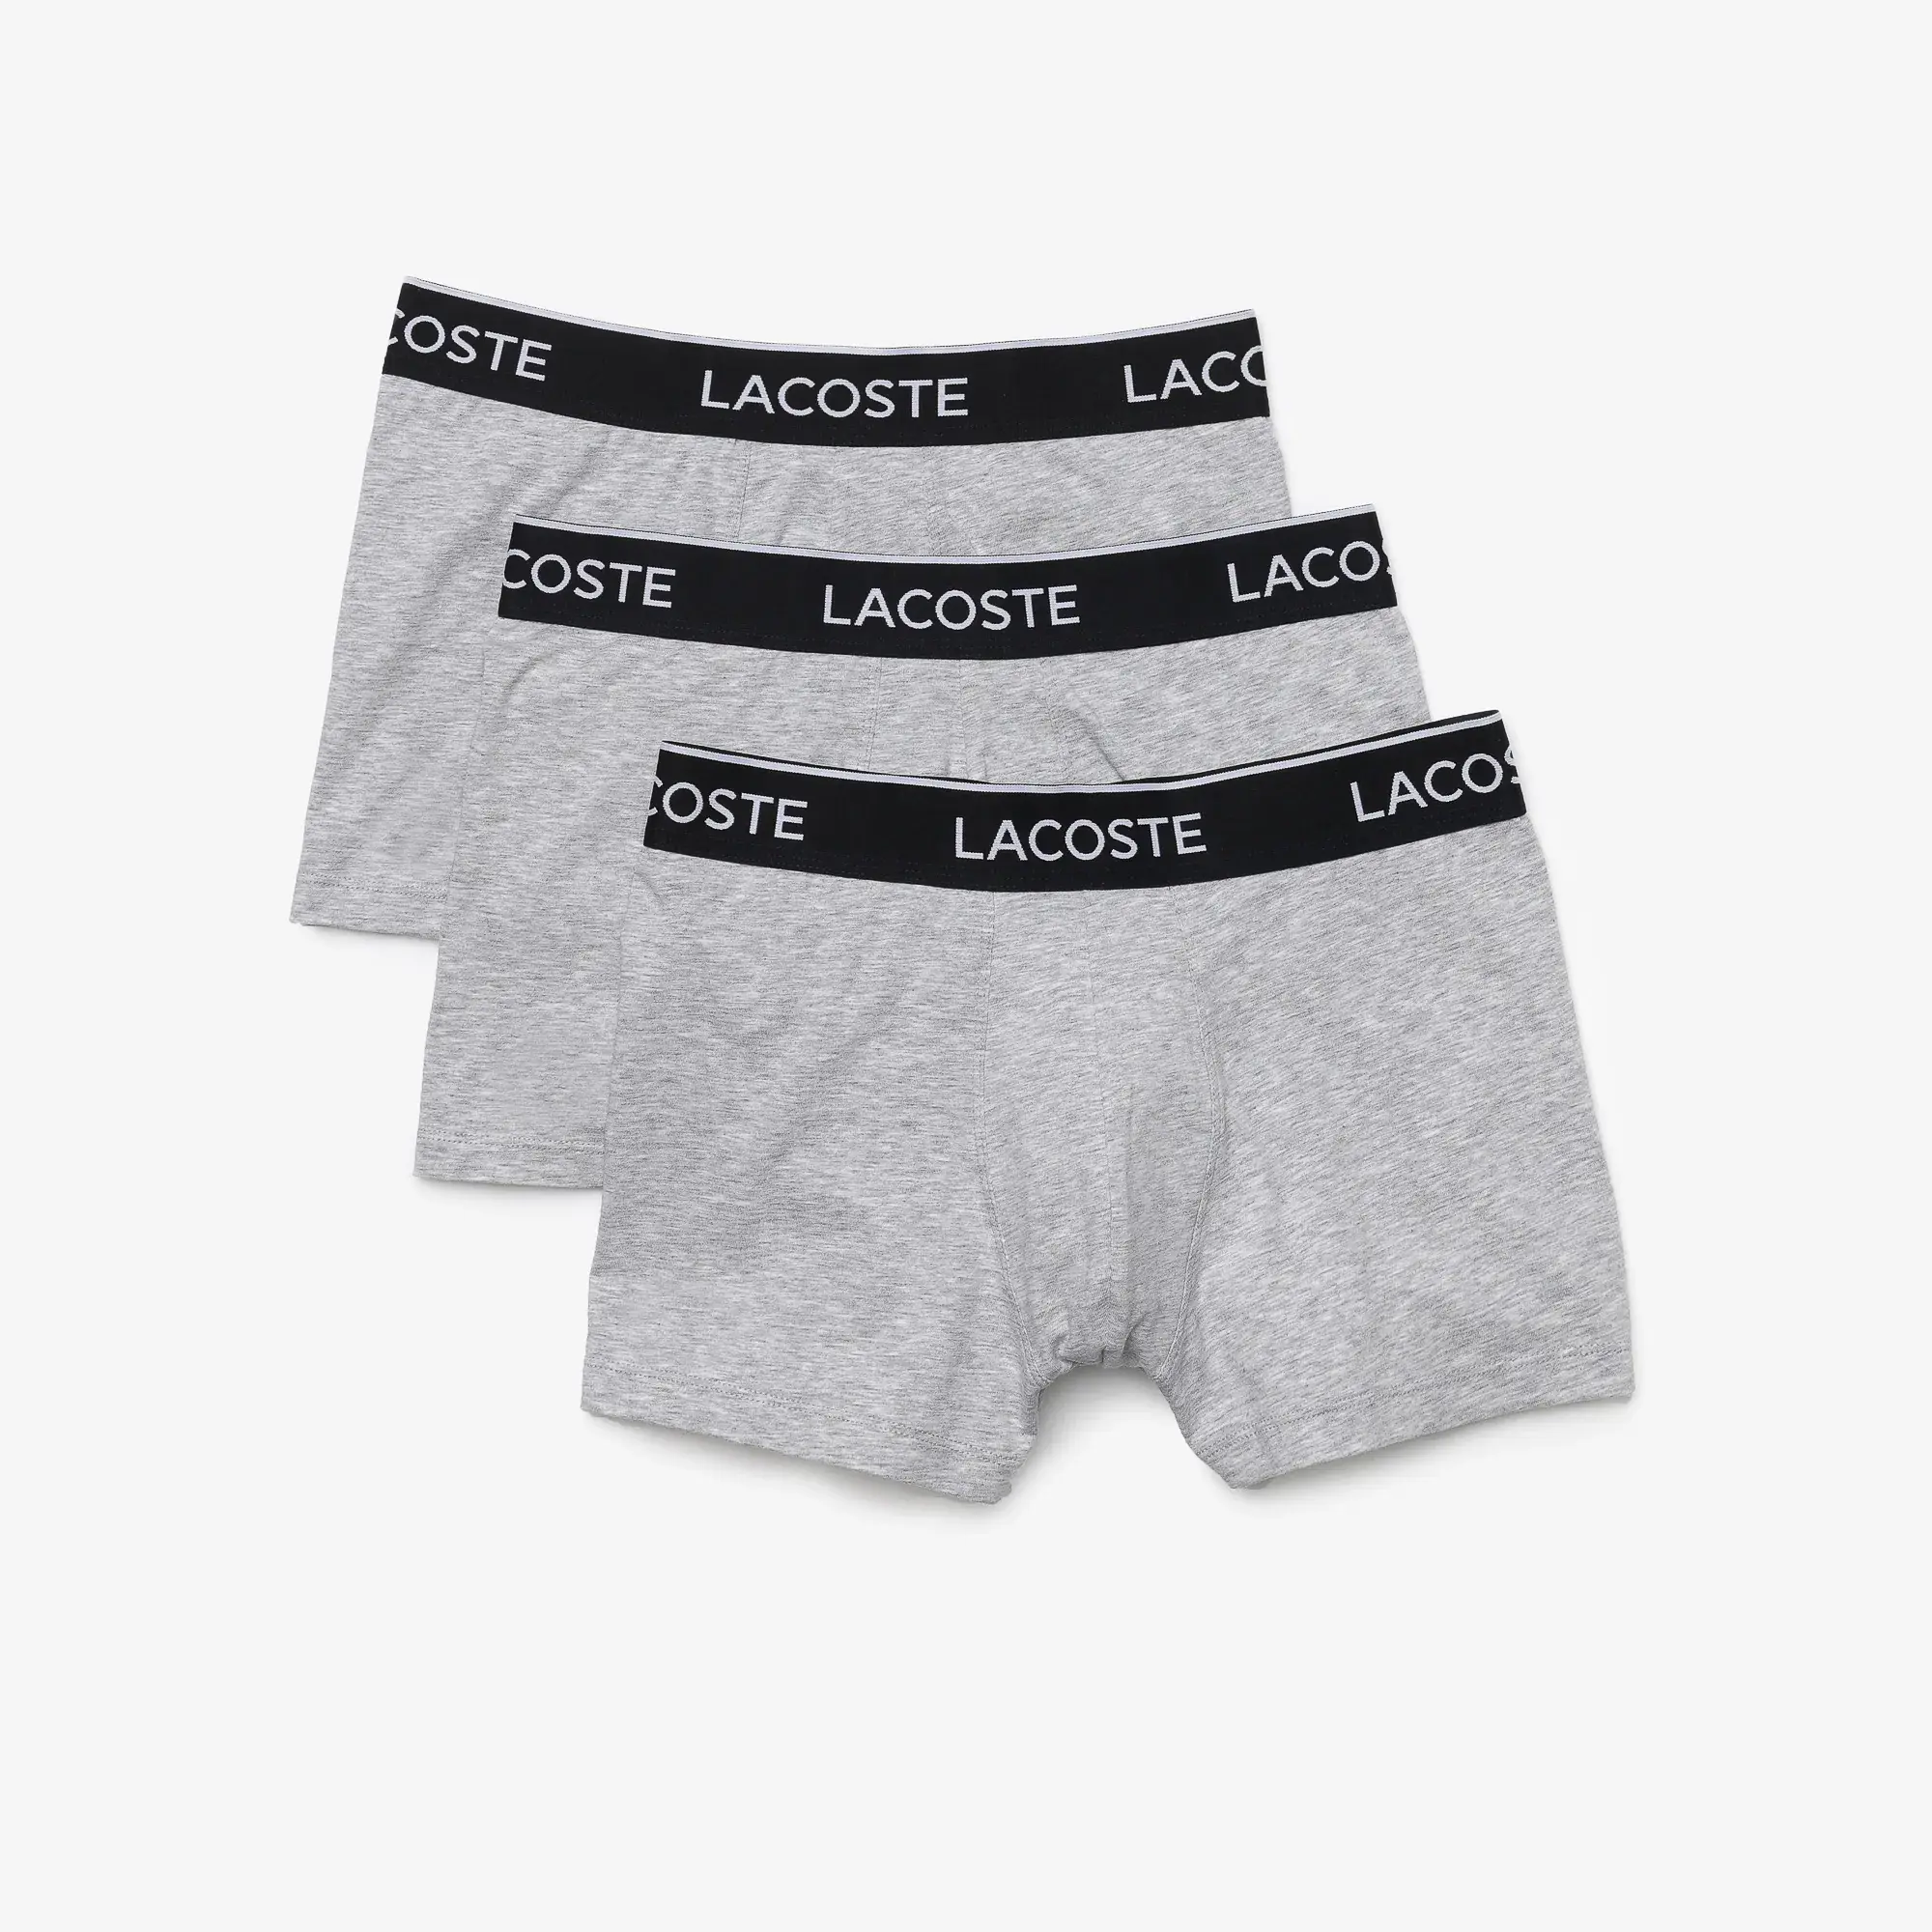 Lacoste Men’s Long Stretch Cotton Boxer Brief 3-Pack. 2